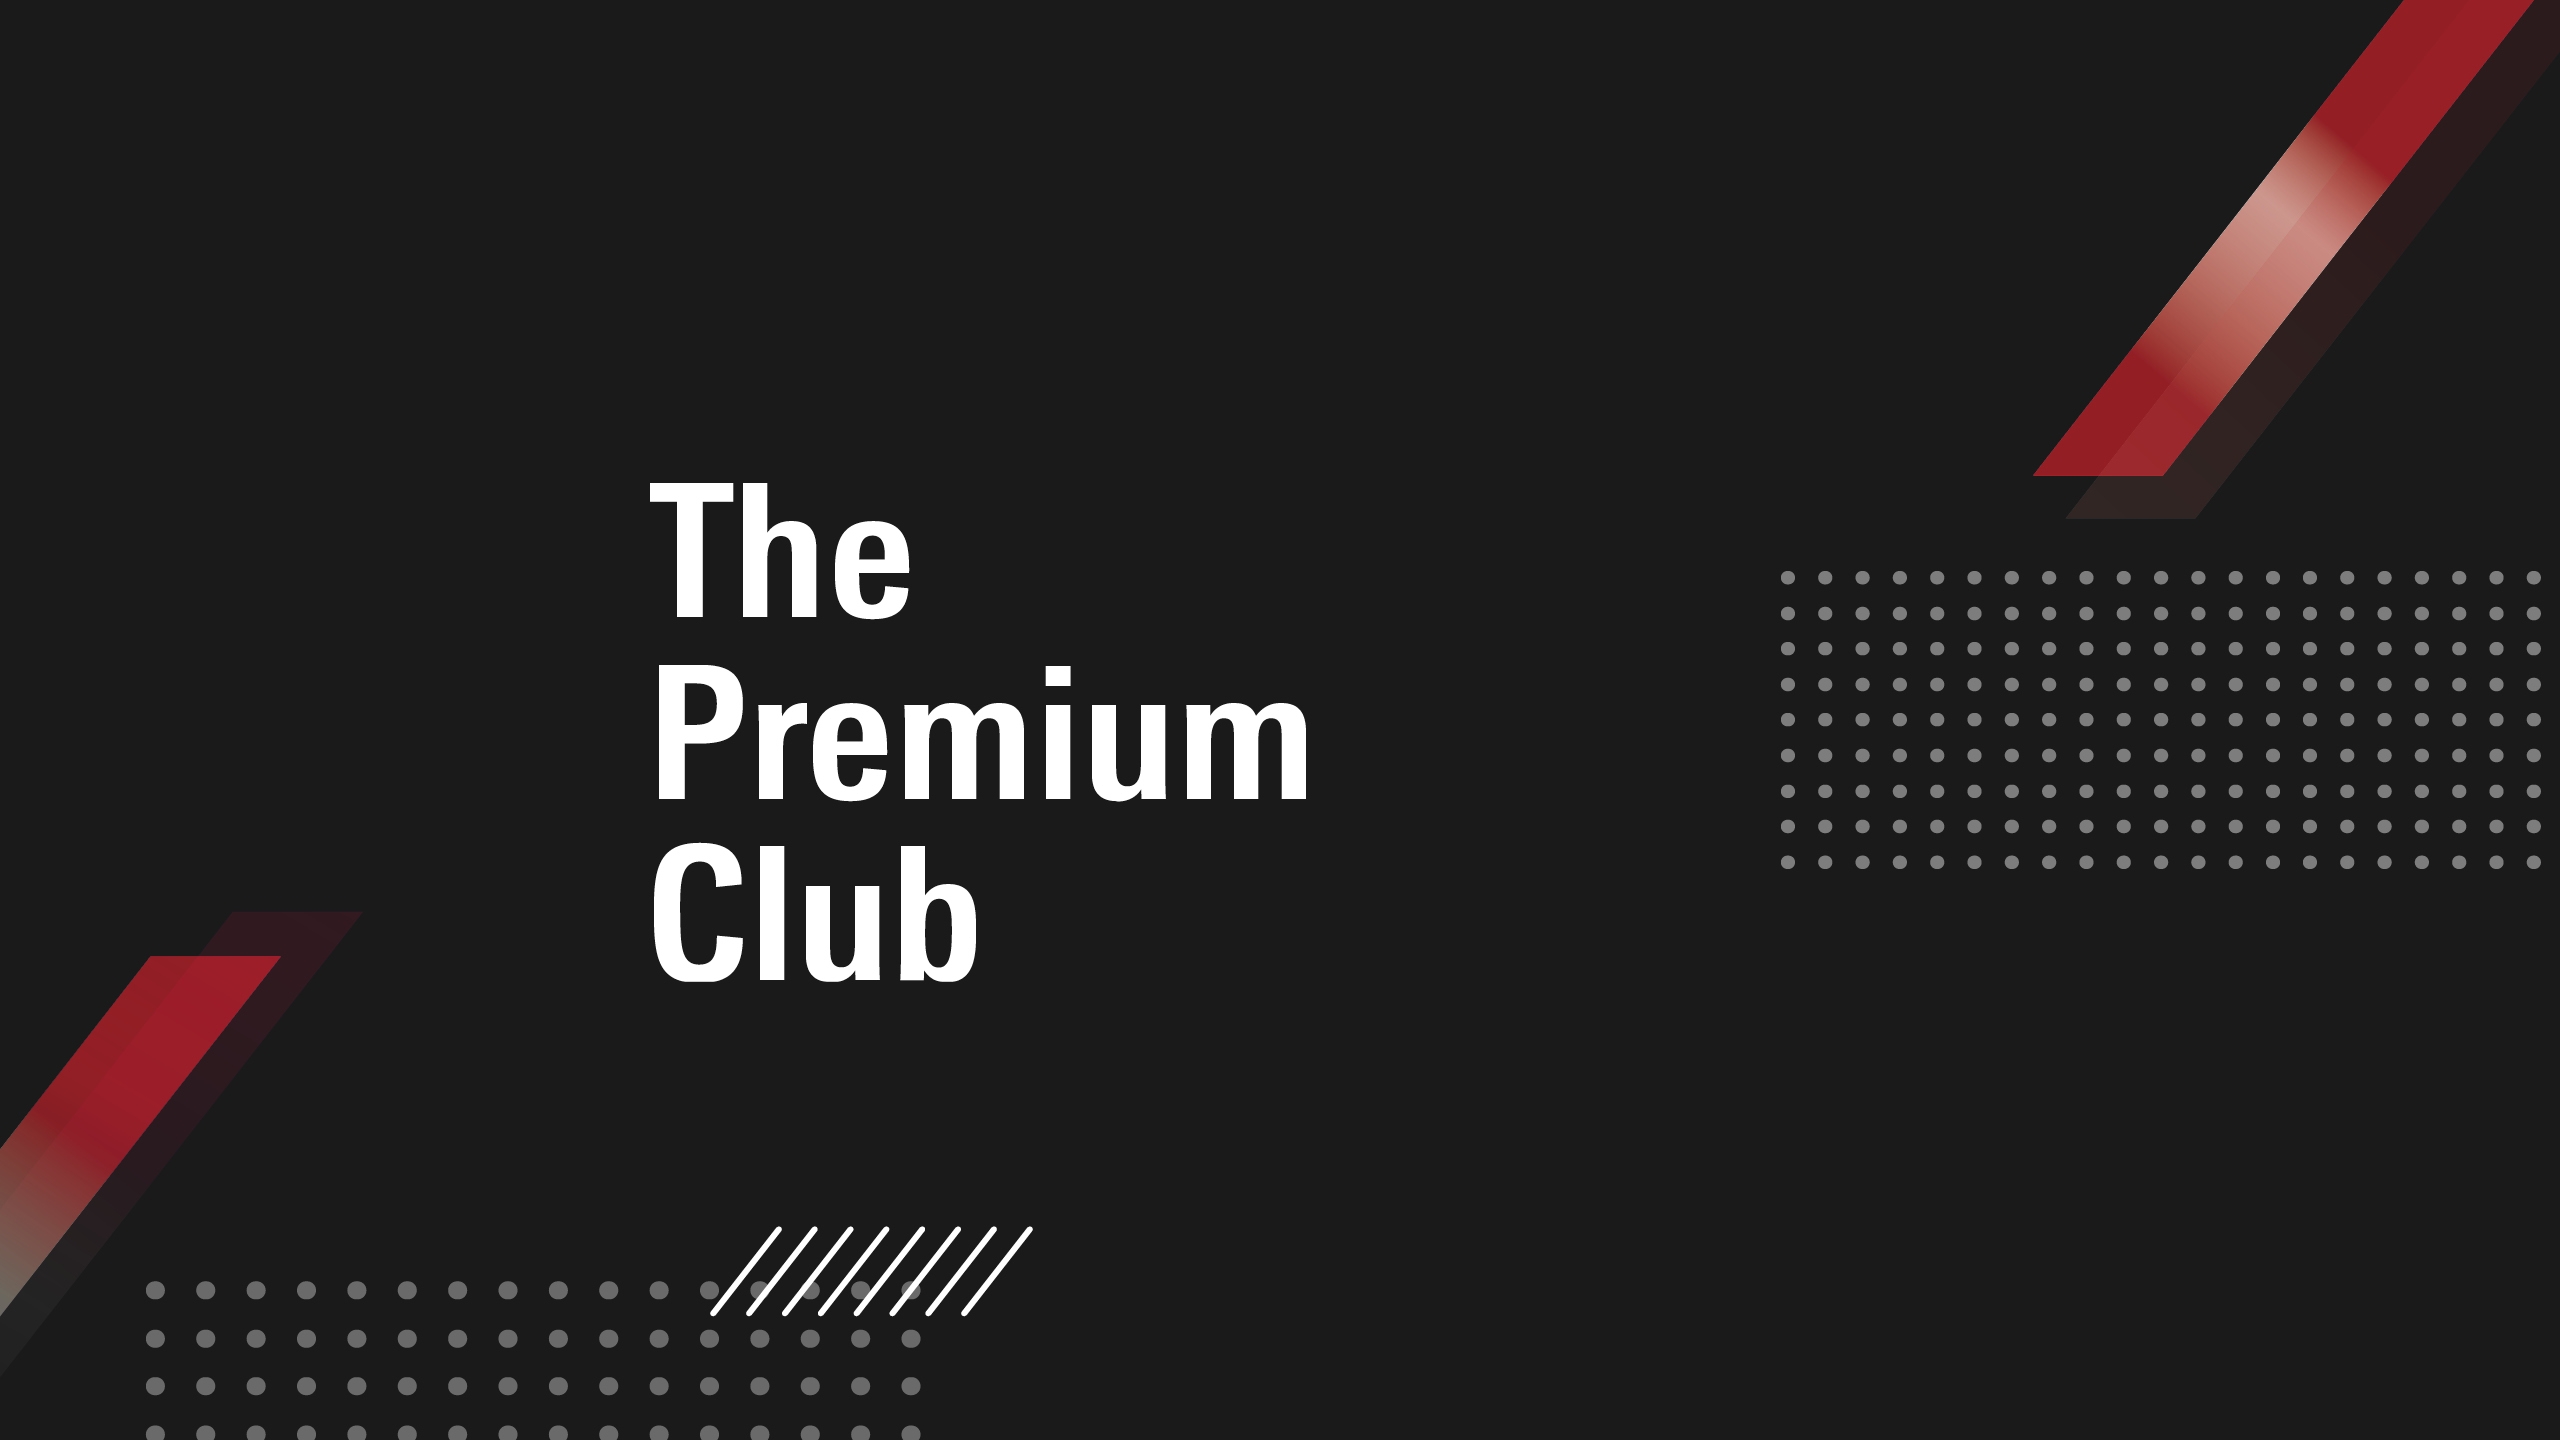 The Premium Club key visual